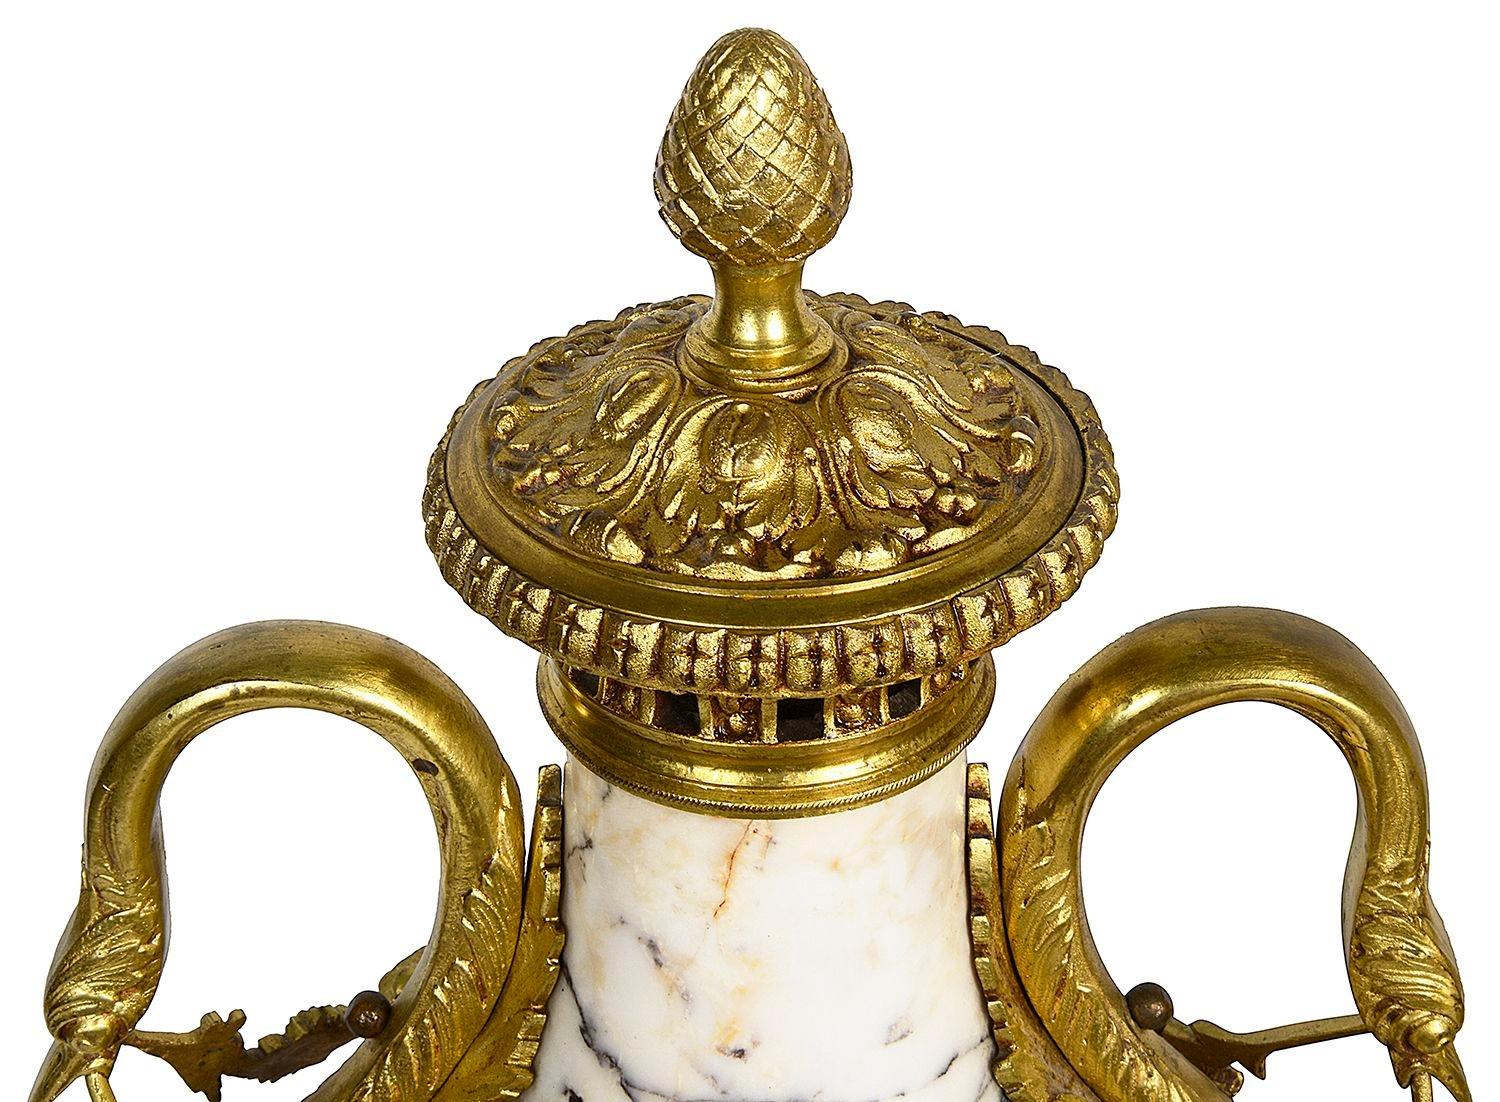 Paire d'urnes classiques du XIXe siècle de style Louis XVI en marbre et bronze doré. Chacune avec des poignées en forme de tête de cygne et un décor de guirlandes florales, sur des socles.

Lot 75 Giooo5/23 CNKZ